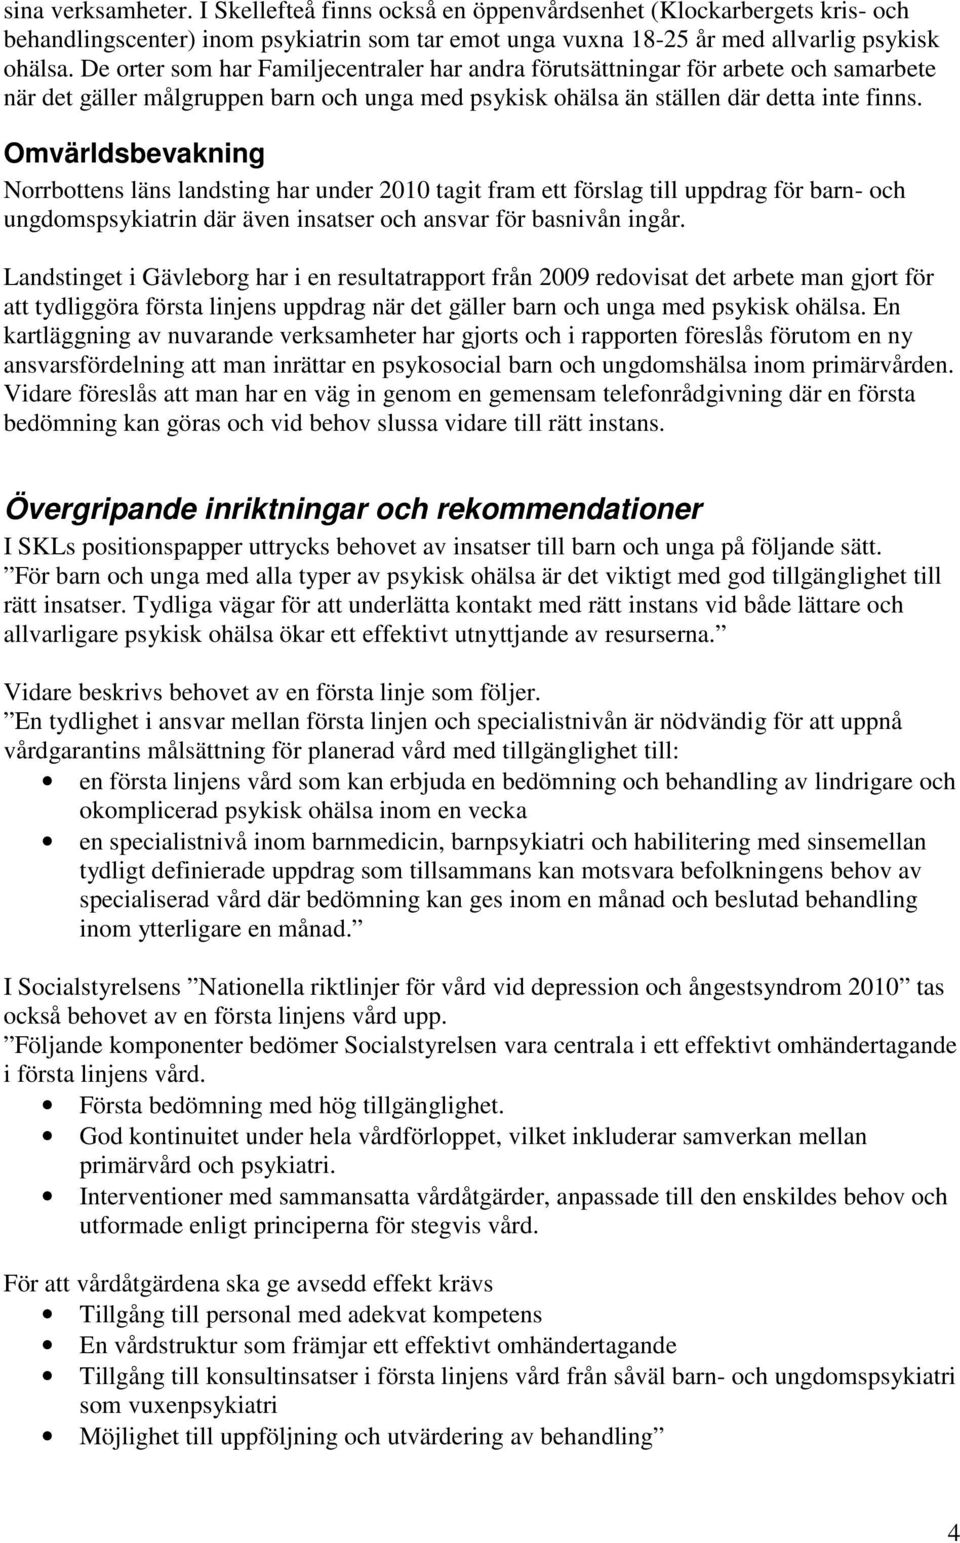 Omvärldsbevakning Norrbottens läns landsting har under 2010 tagit fram ett förslag till uppdrag för barn- och ungdomspsykiatrin där även insatser och ansvar för basnivån ingår.